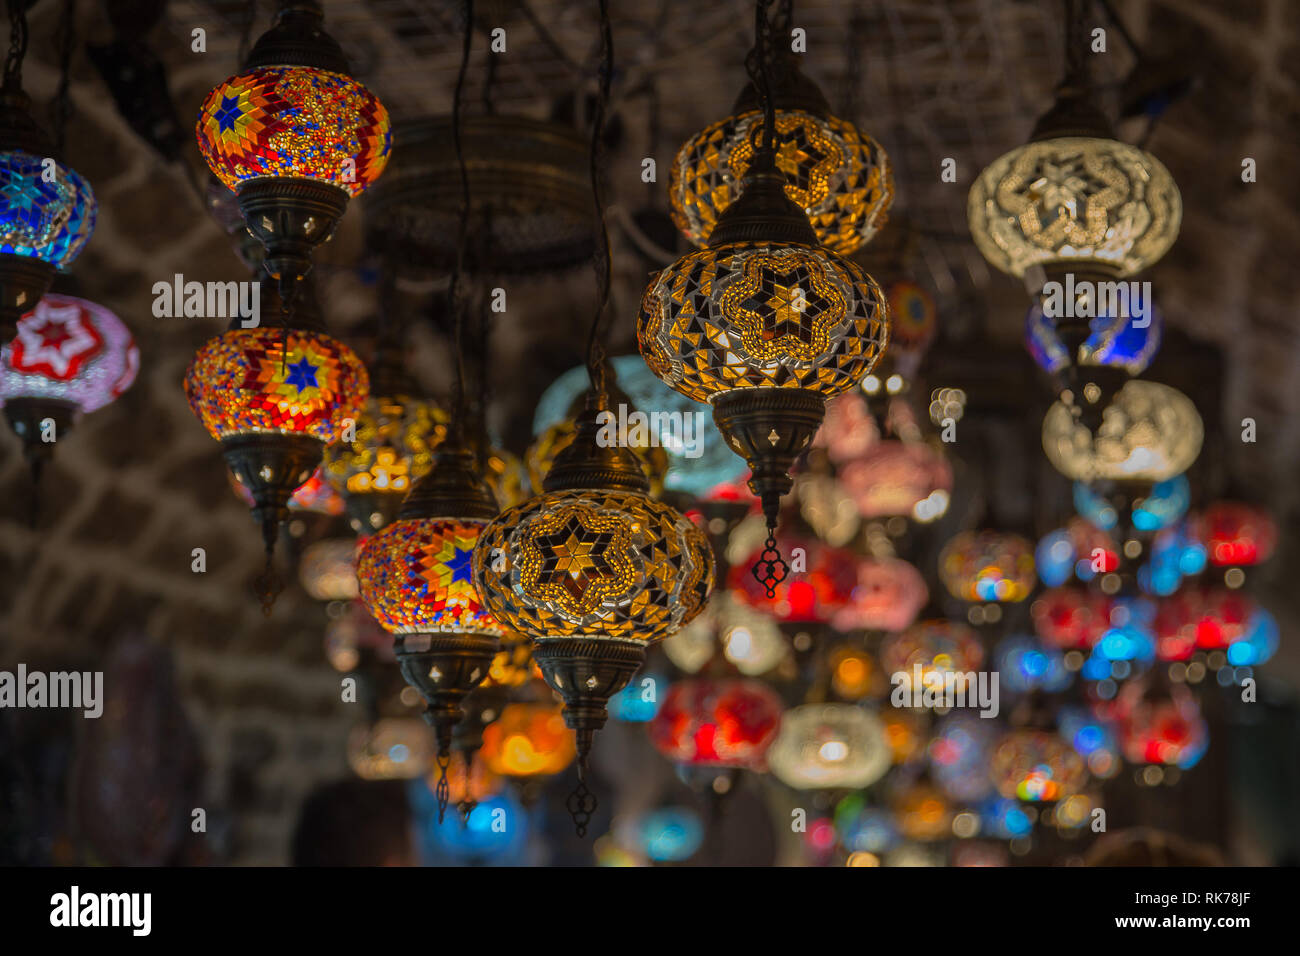 Türkische buntes Mosaik-Lampe - orientalisch traditionelle Licht  Stockfotografie - Alamy